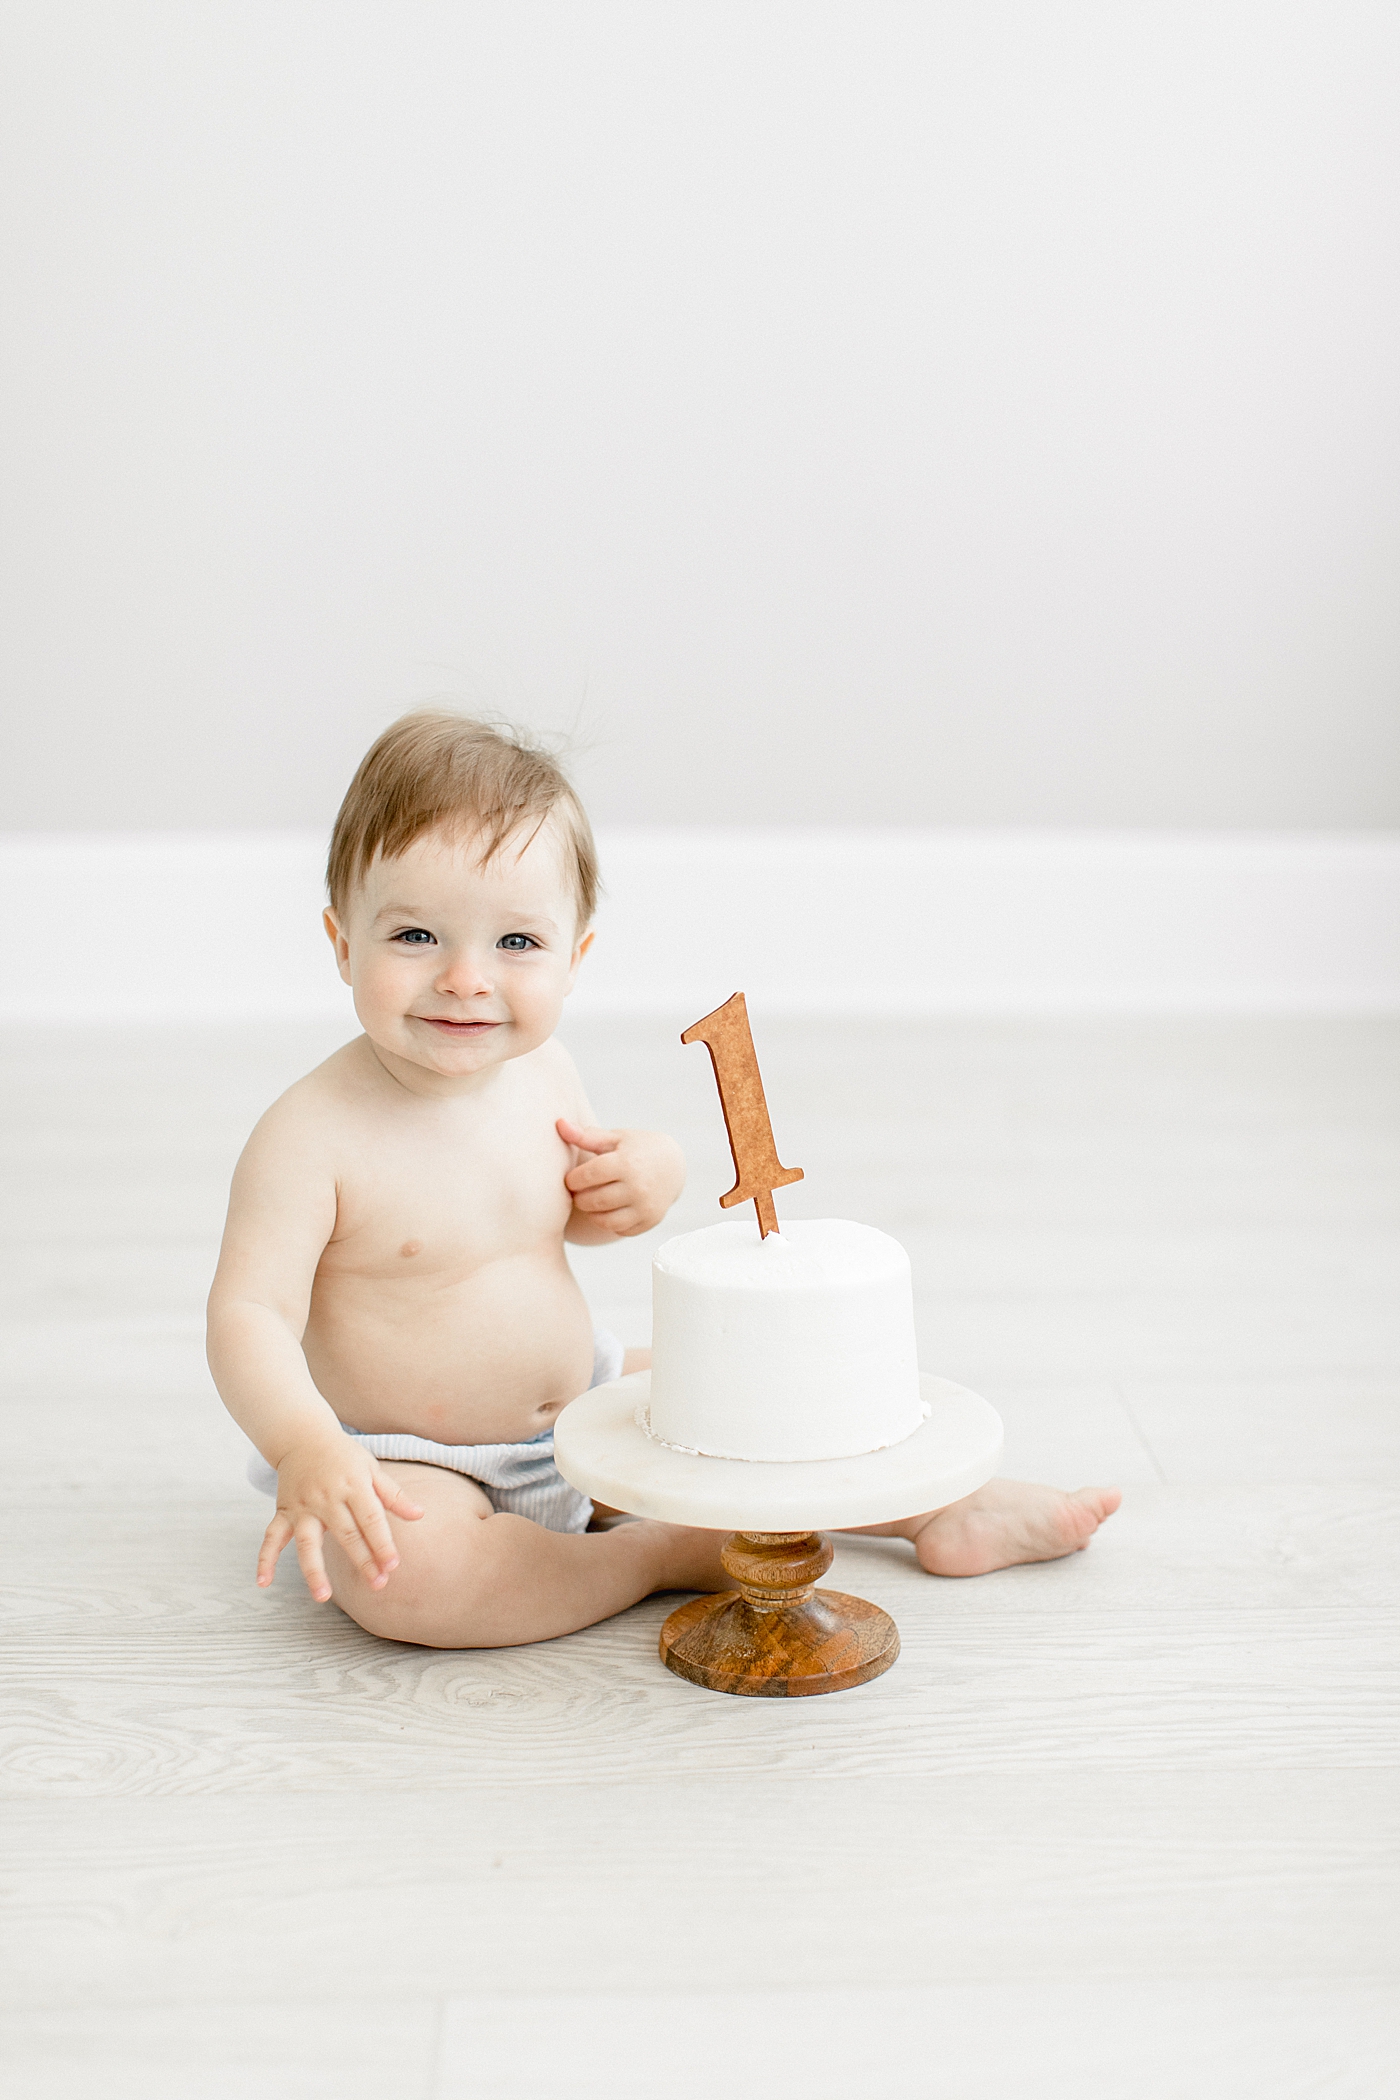 One year old cake smash photoshoot. Photo by Brittany Elise Photography.